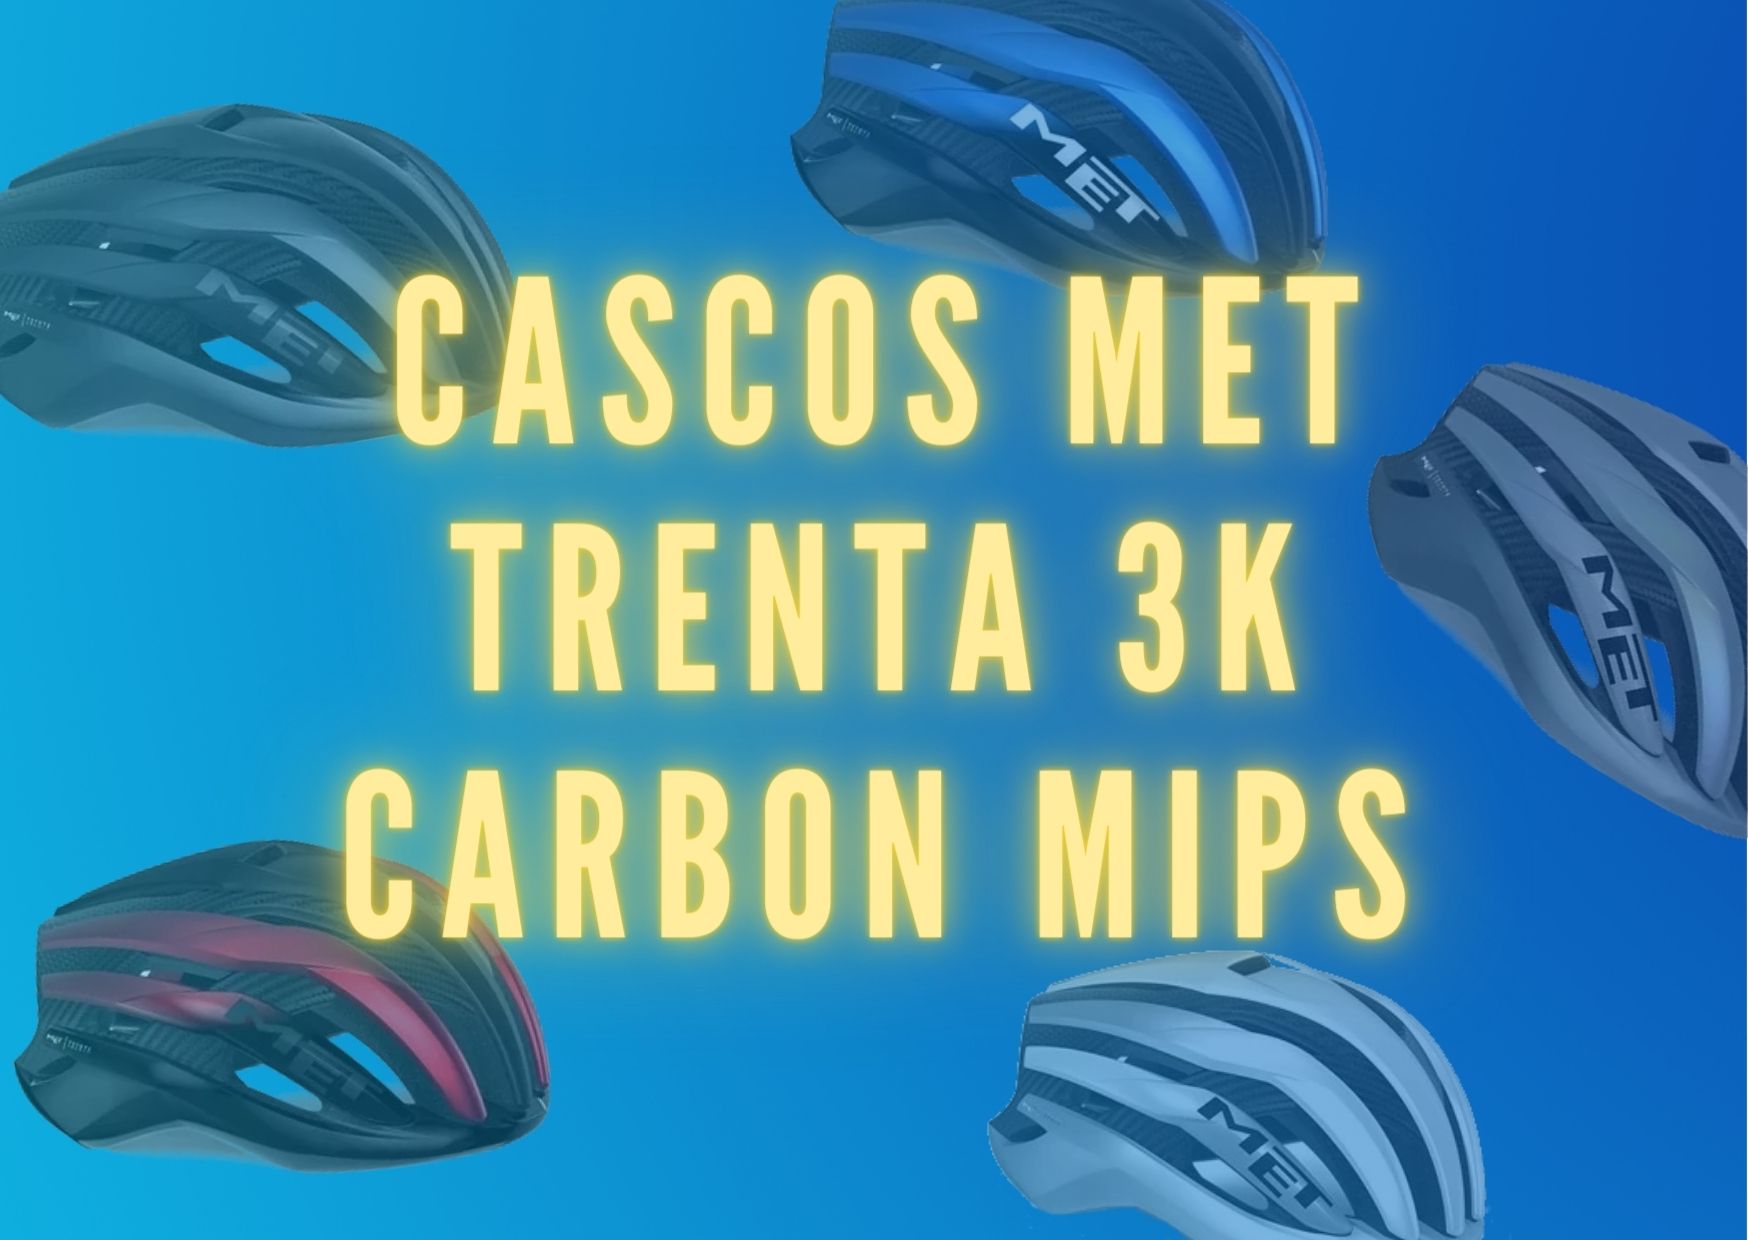 Cascos MET trenta 3k carbon mips